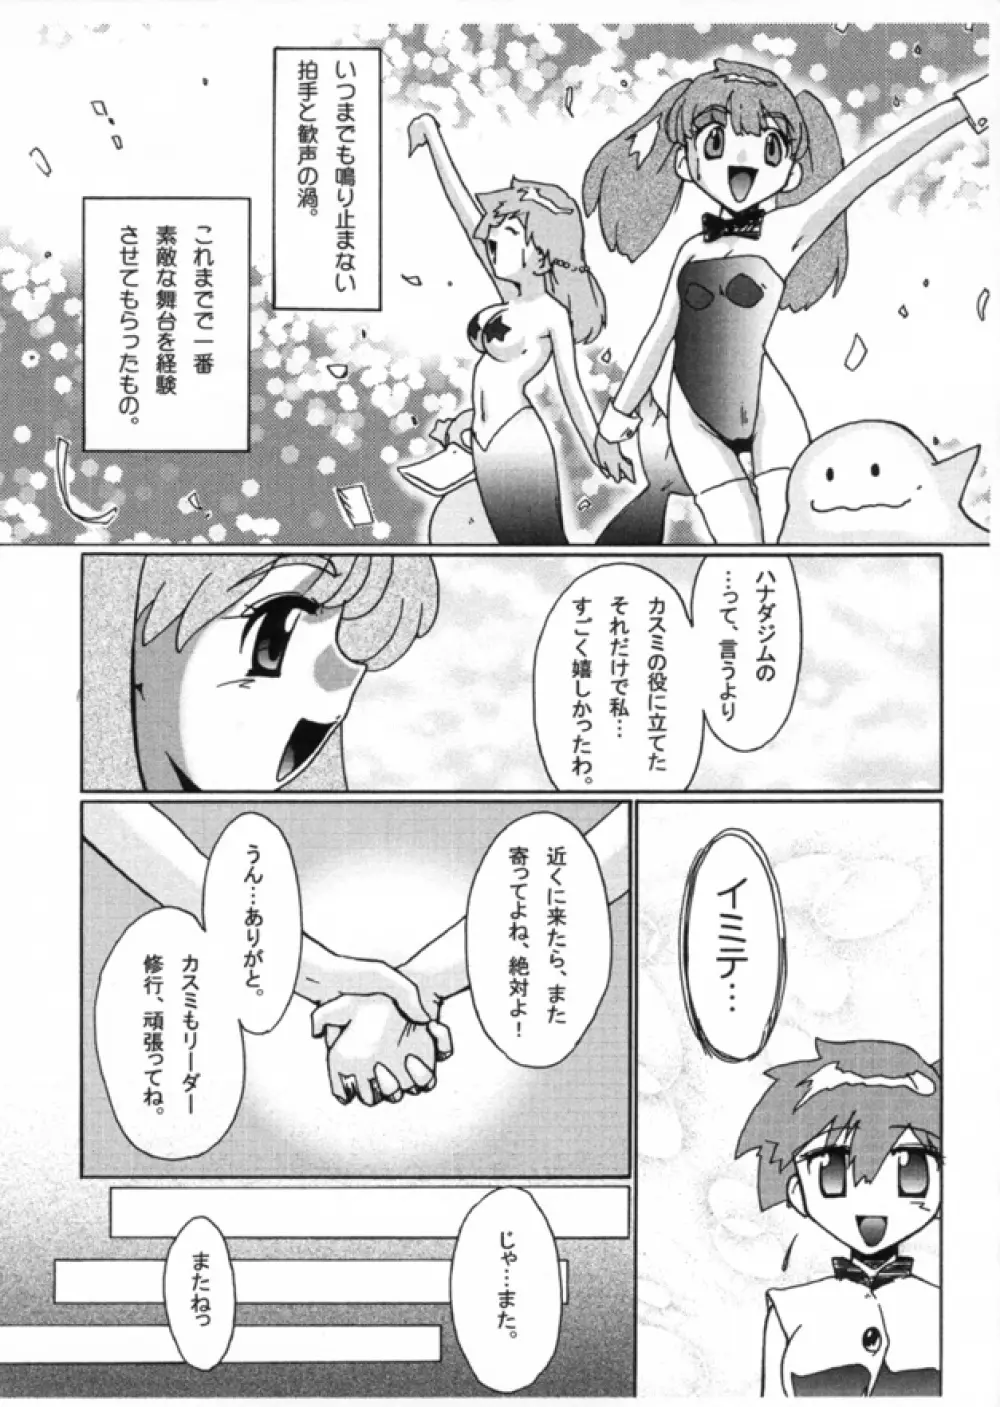 KASUMIX XPLOSION Kasumi Comic part5 40ページ